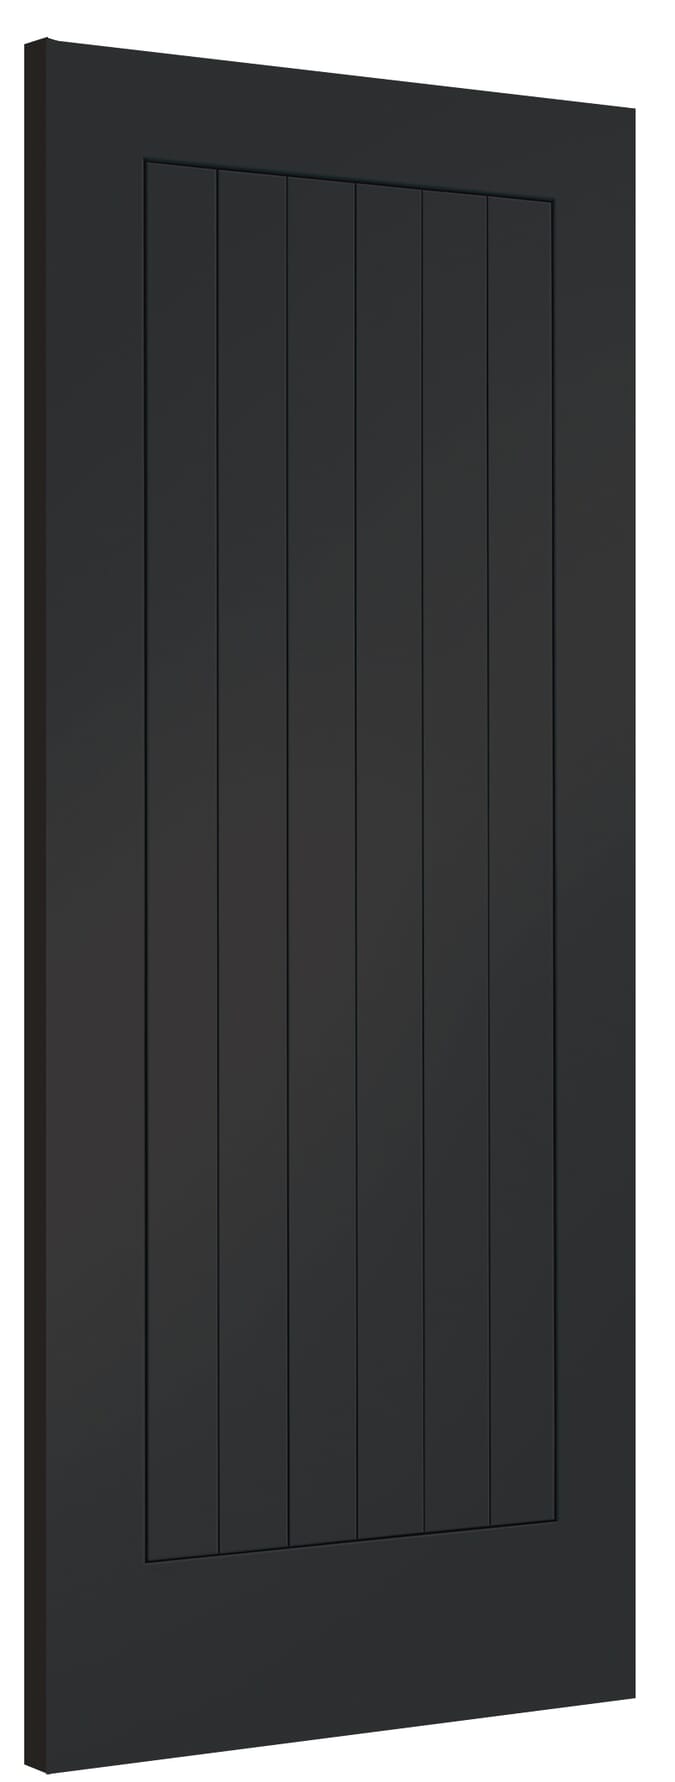 686x1981x44mm (27") Suffolk Cosmos Black Fire Door